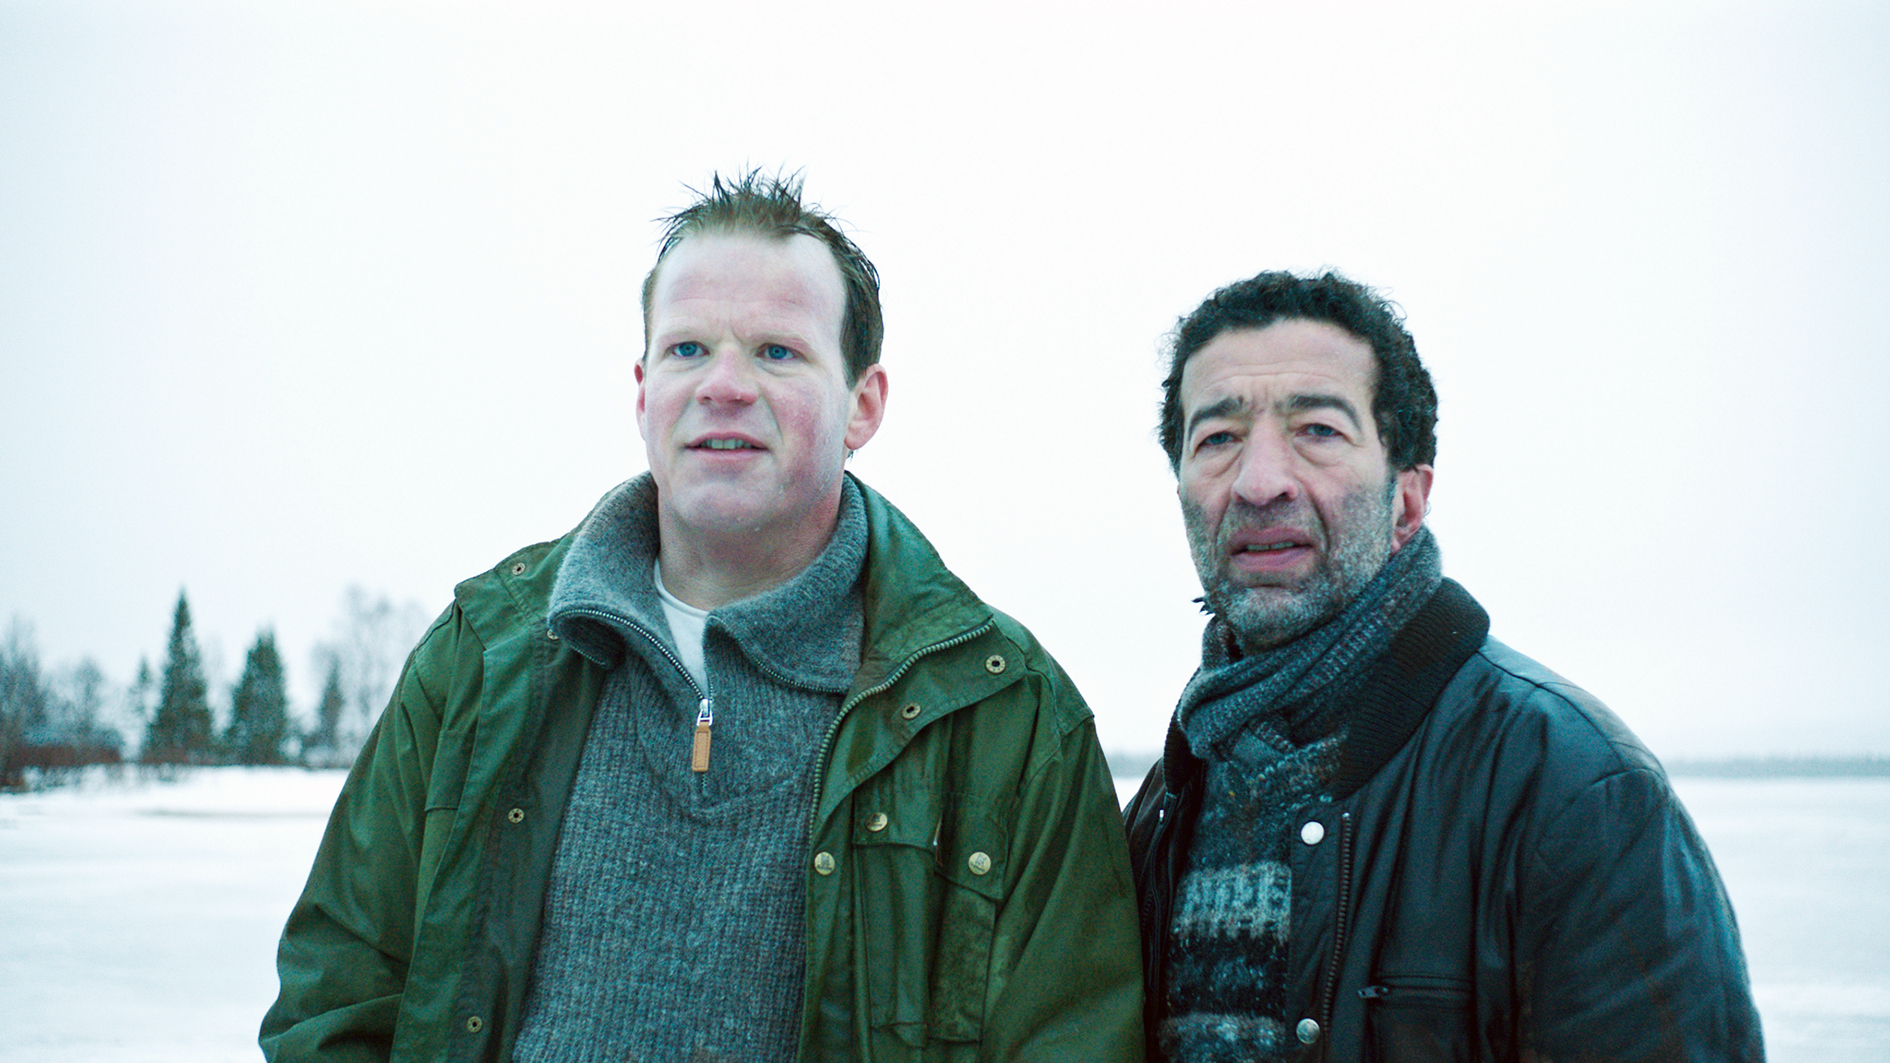 Filmstill aus "Welcome to Norway": Zwei Männer stehen in einer Schneelandschaft und beobachten etwas außerhalb des Bildfeldes.